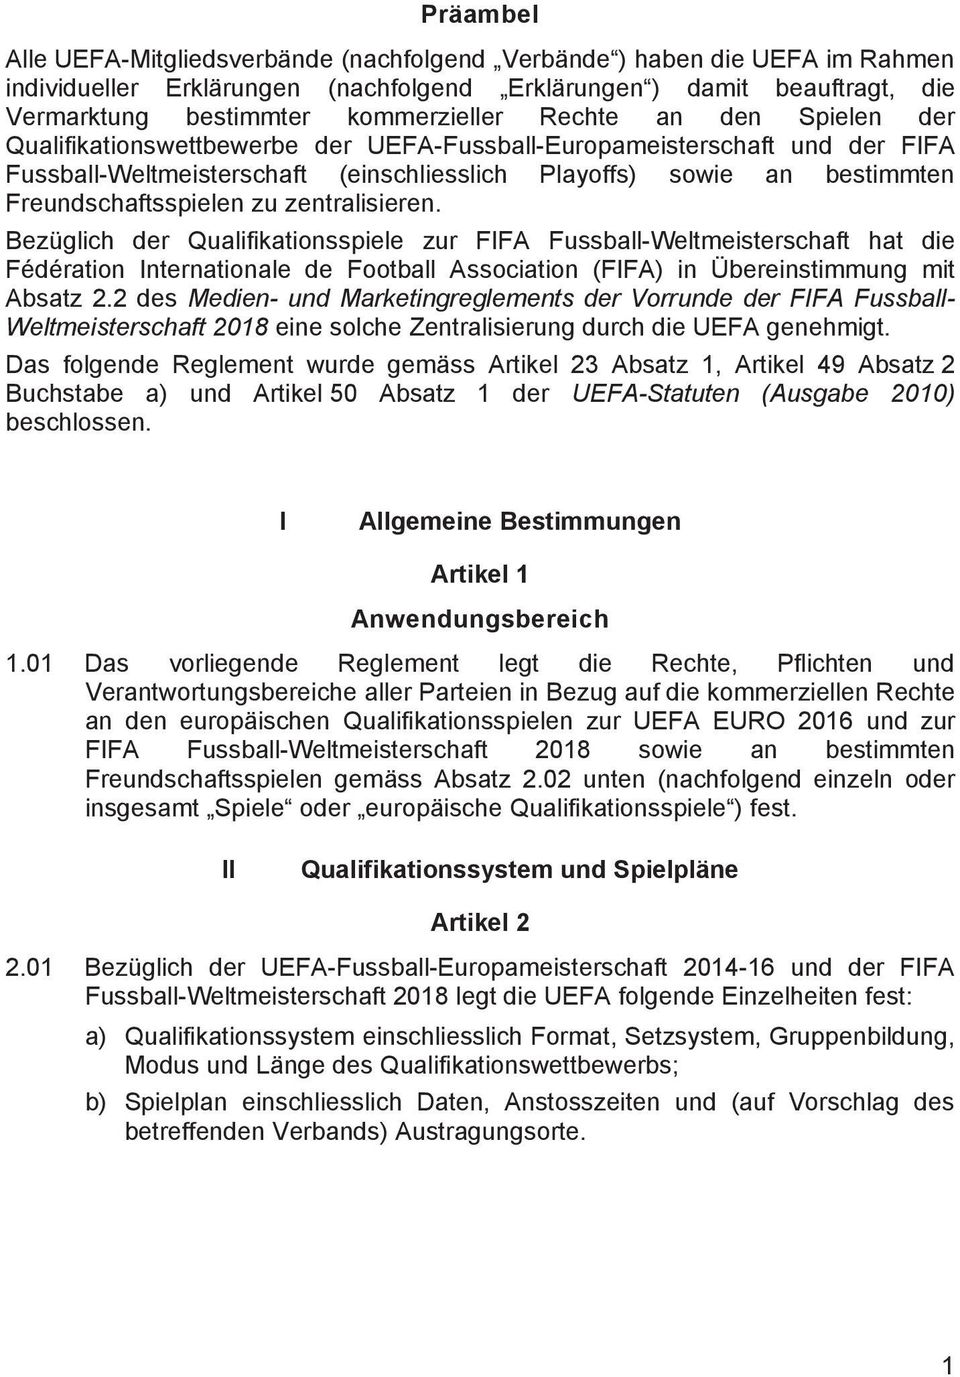 zu zentralisieren. Bezüglich der Qualifikationsspiele zur FIFA Fussball-Weltmeisterschaft hat die Fédération Internationale de Football Association (FIFA) in Übereinstimmung mit Absatz 2.